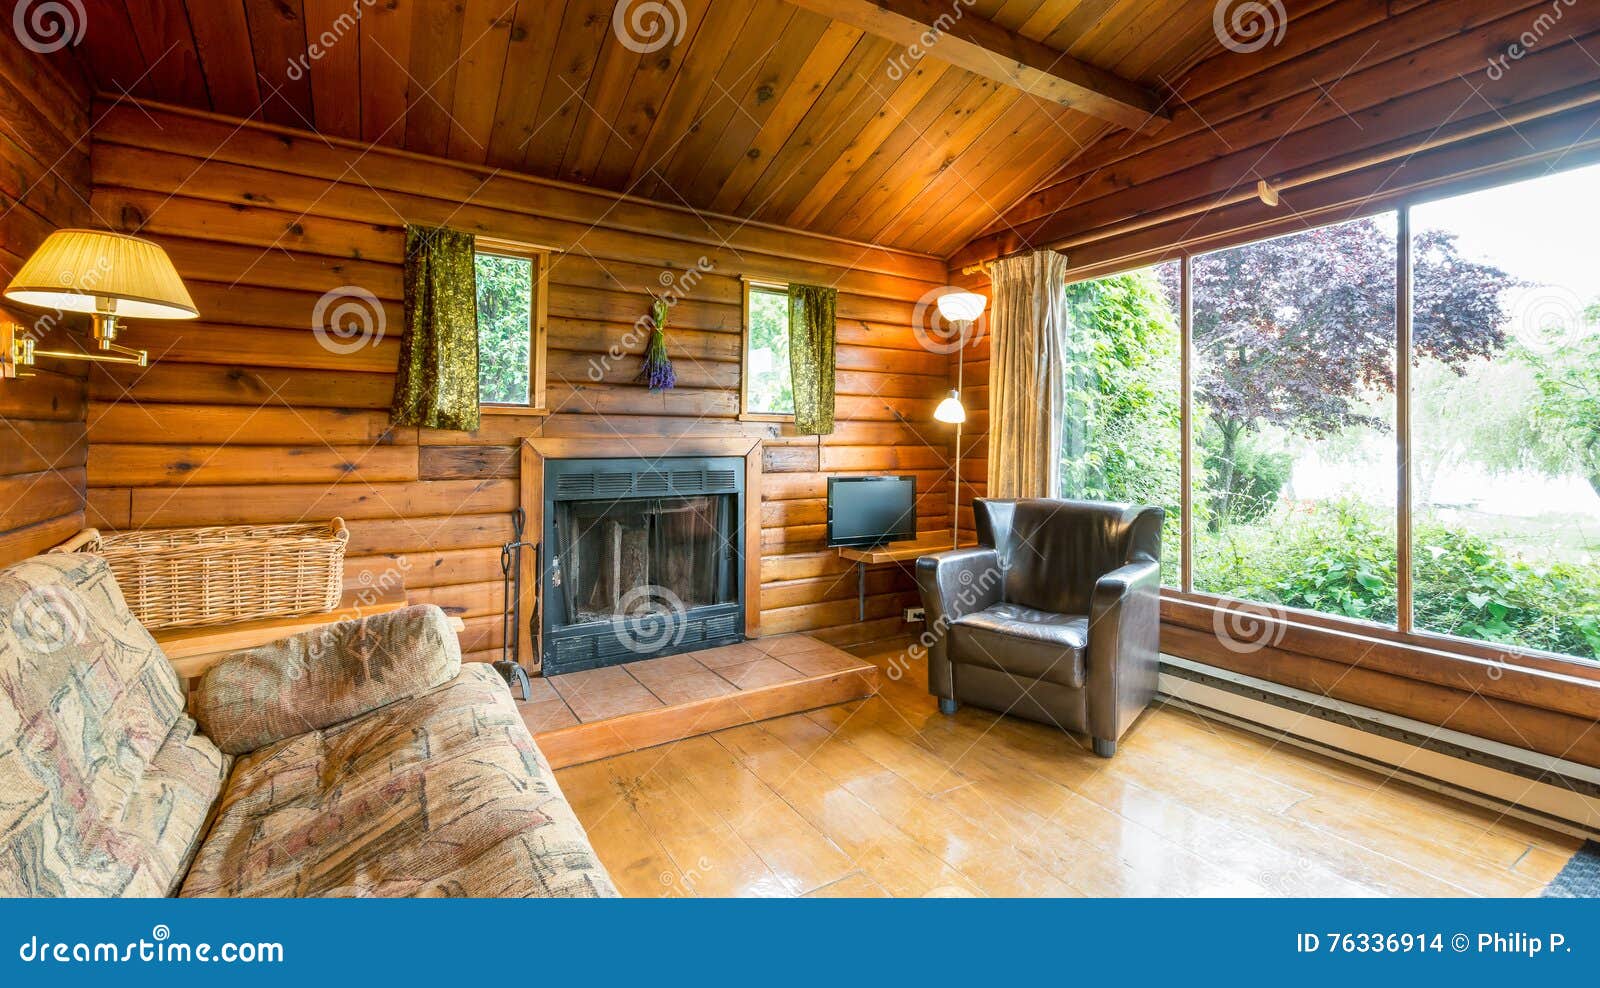 cozy interior of a rustic log cabin